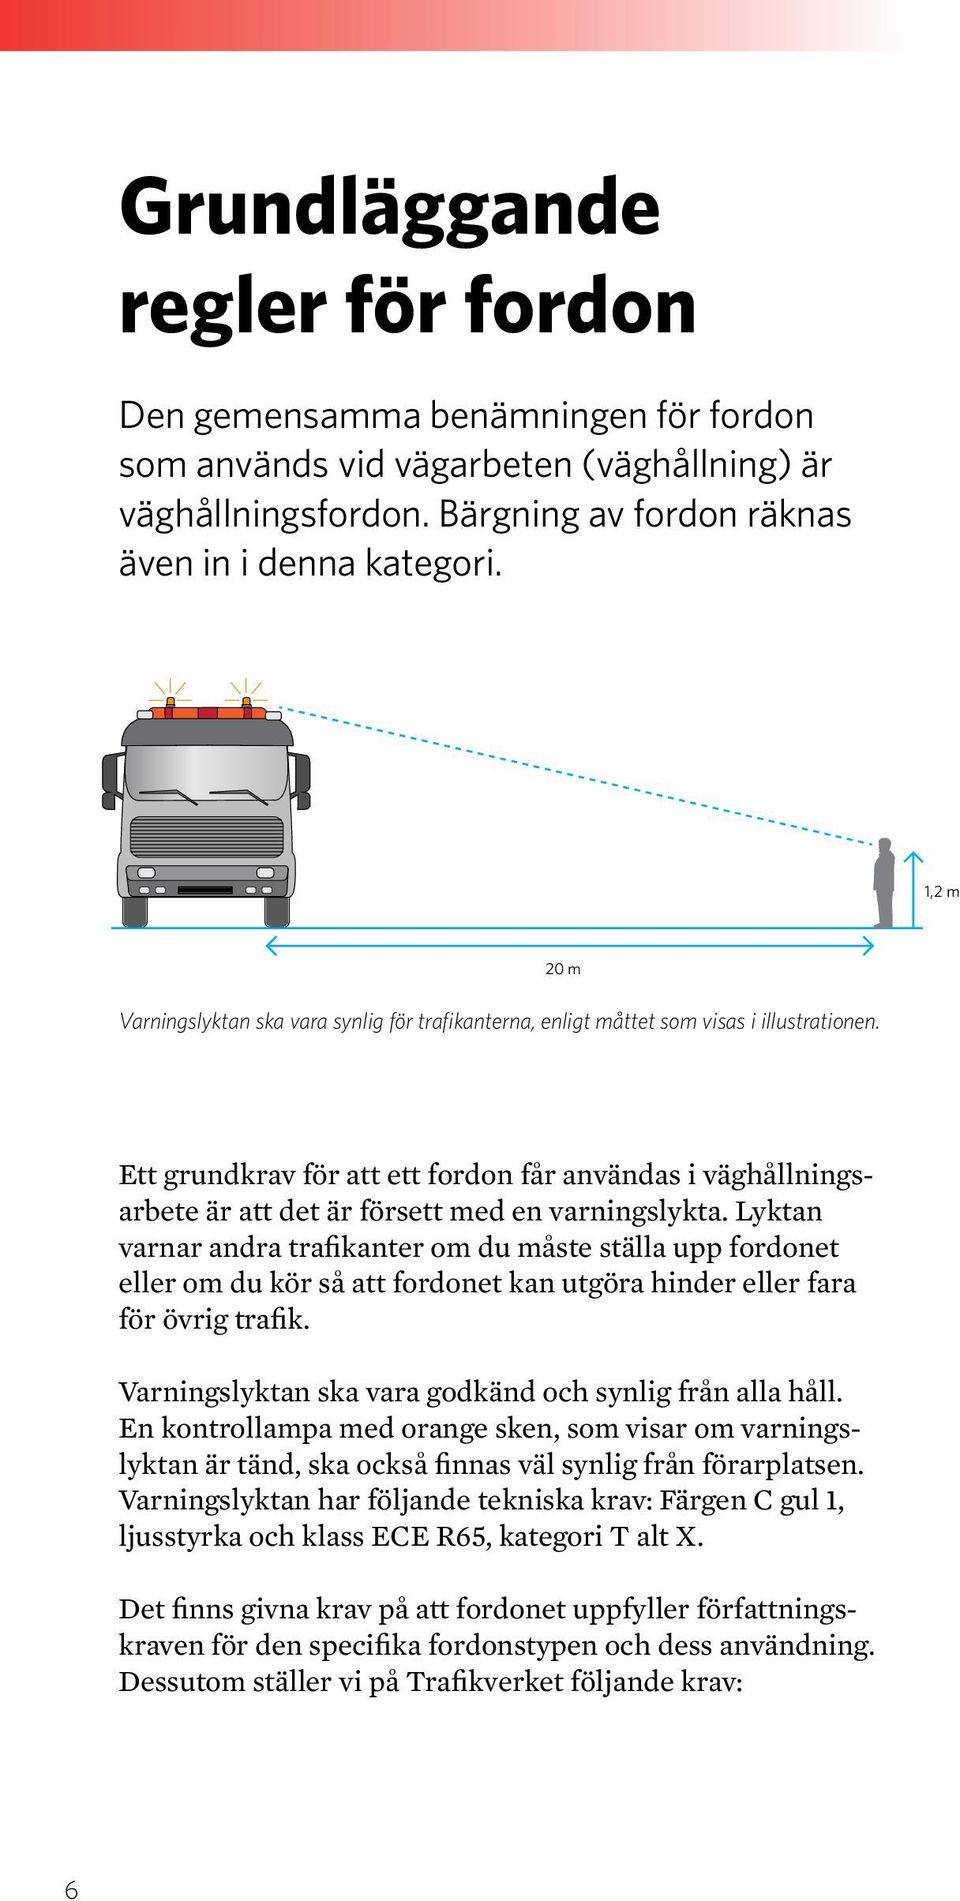 Ett grundkrav för att ett fordon får användas i väghållningsarbete är att det är försett med en varningslykta.